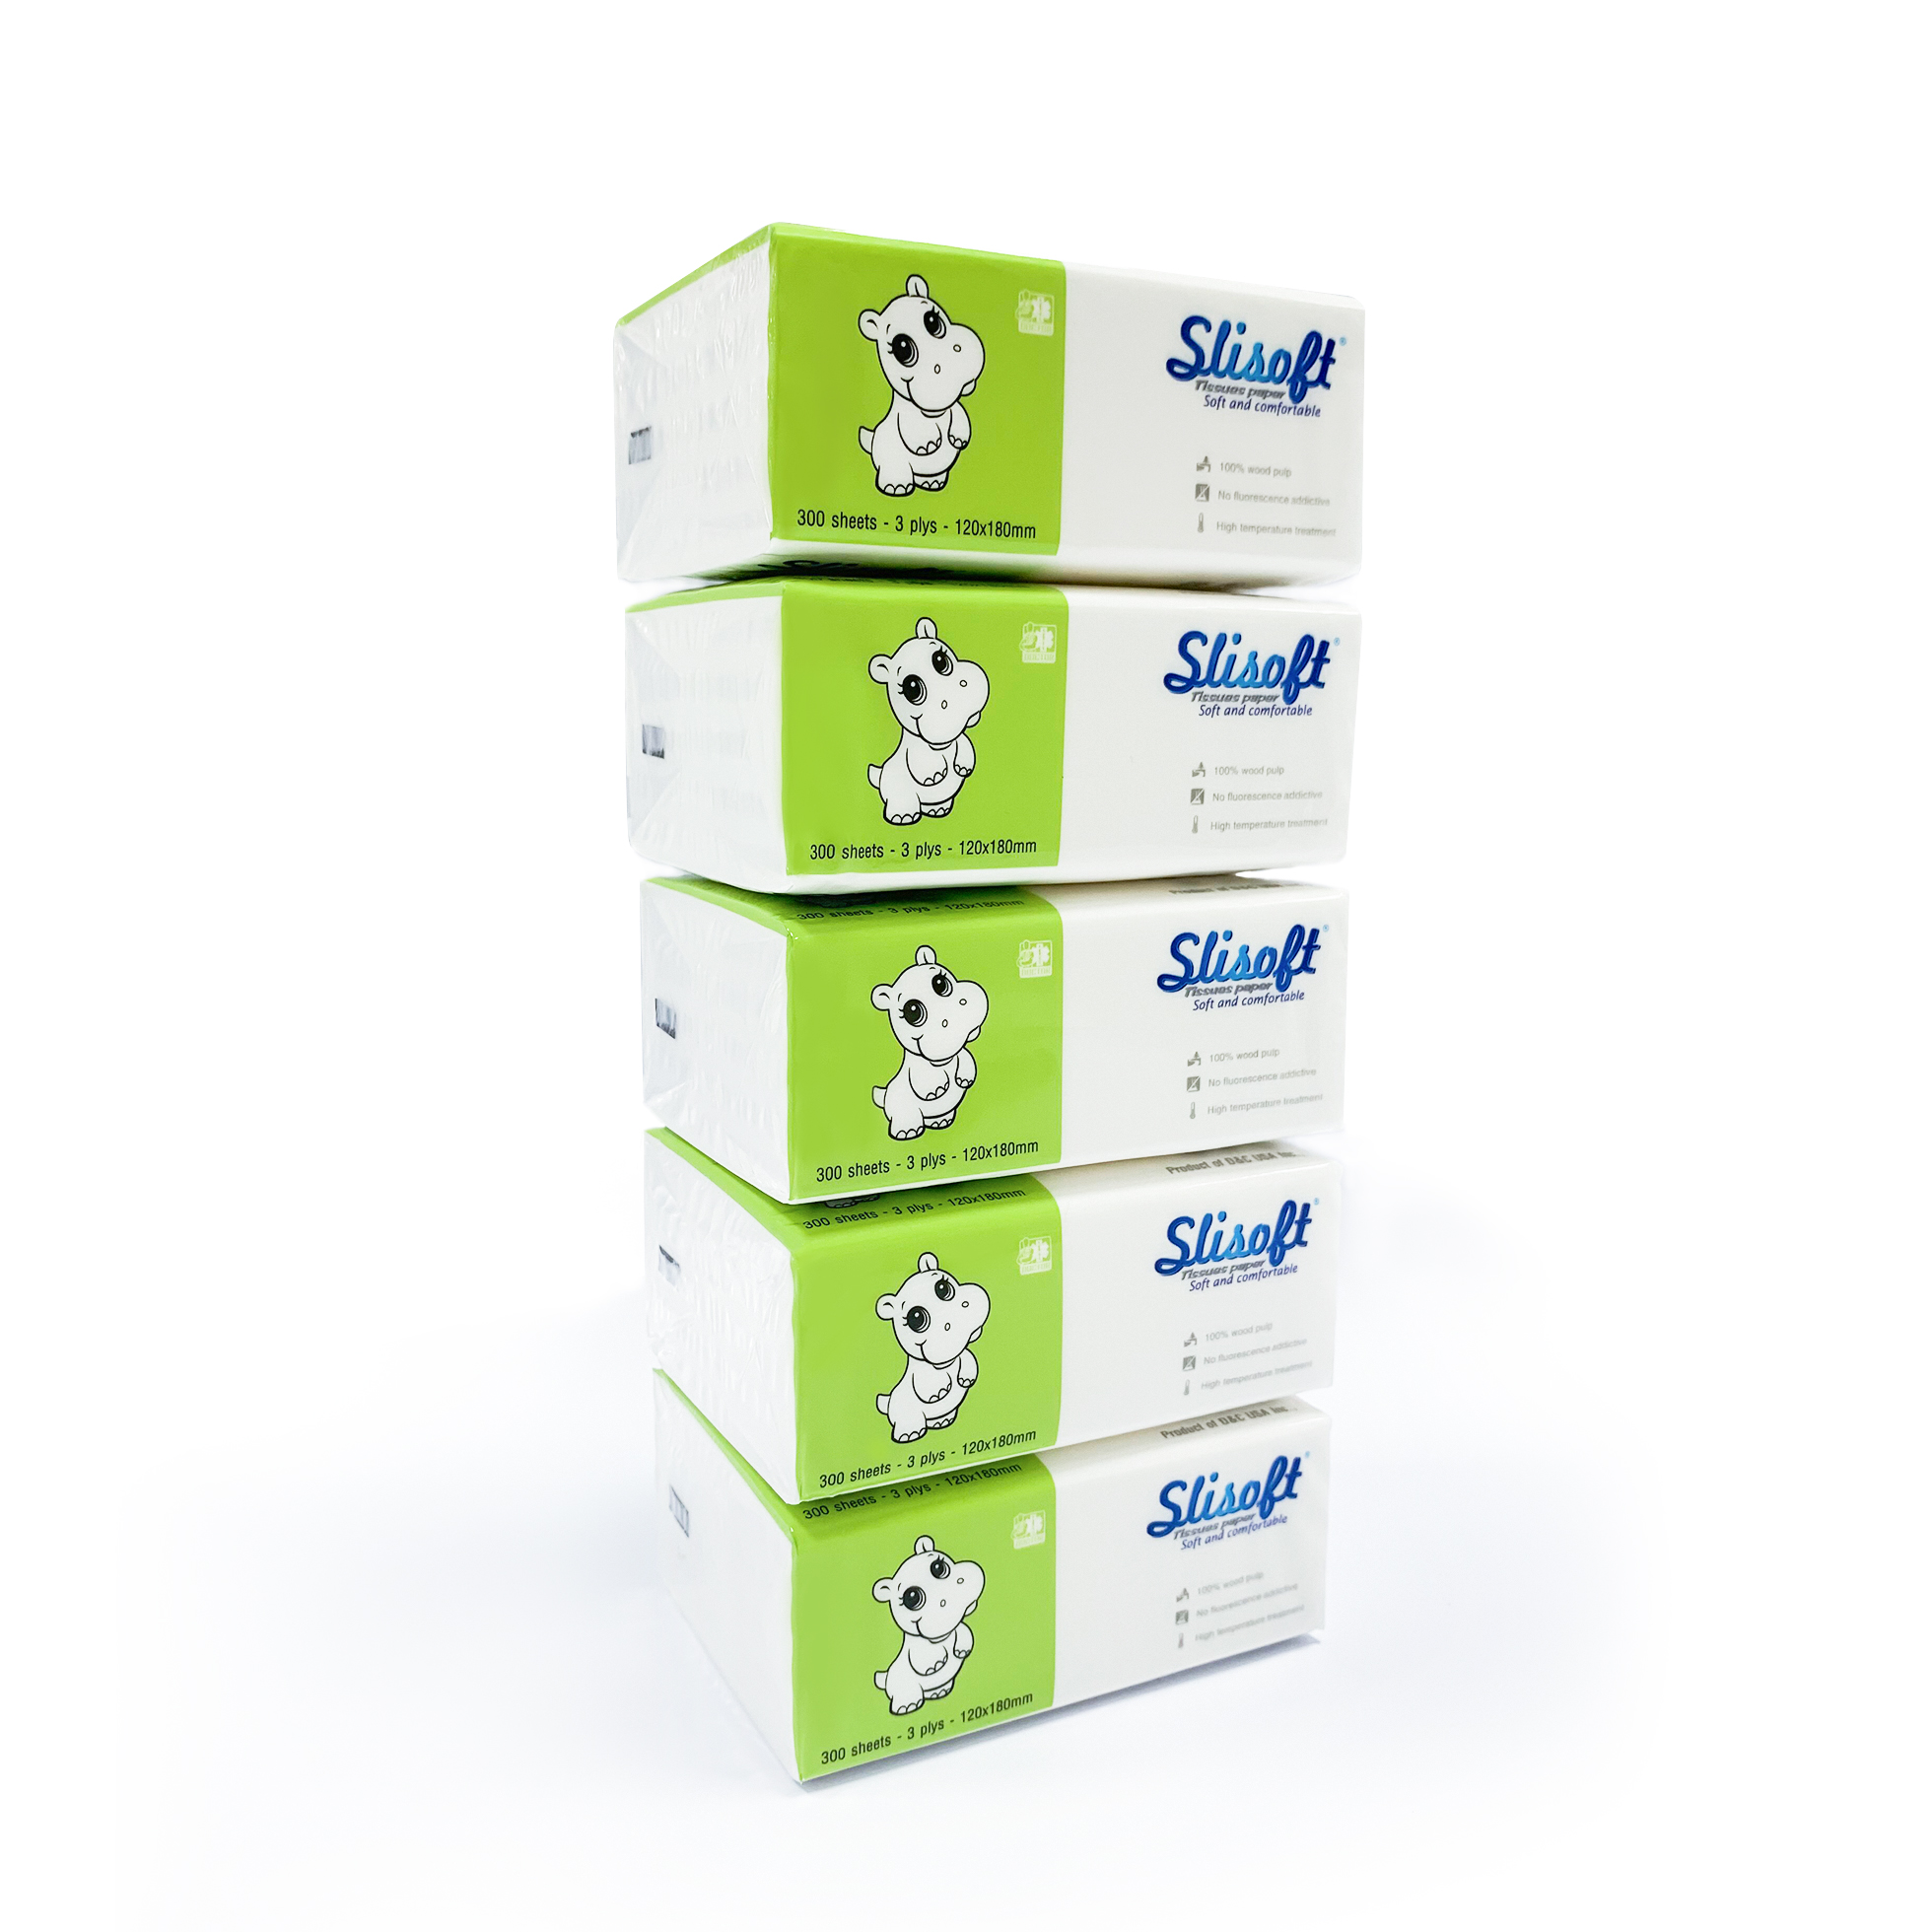 5 Bịch Giấy ăn Slisoft Trắng 3 lớp x 100 tờ đa năng,khăn giấy rút không chất tẩy trắng an toàn cho cả gia đình